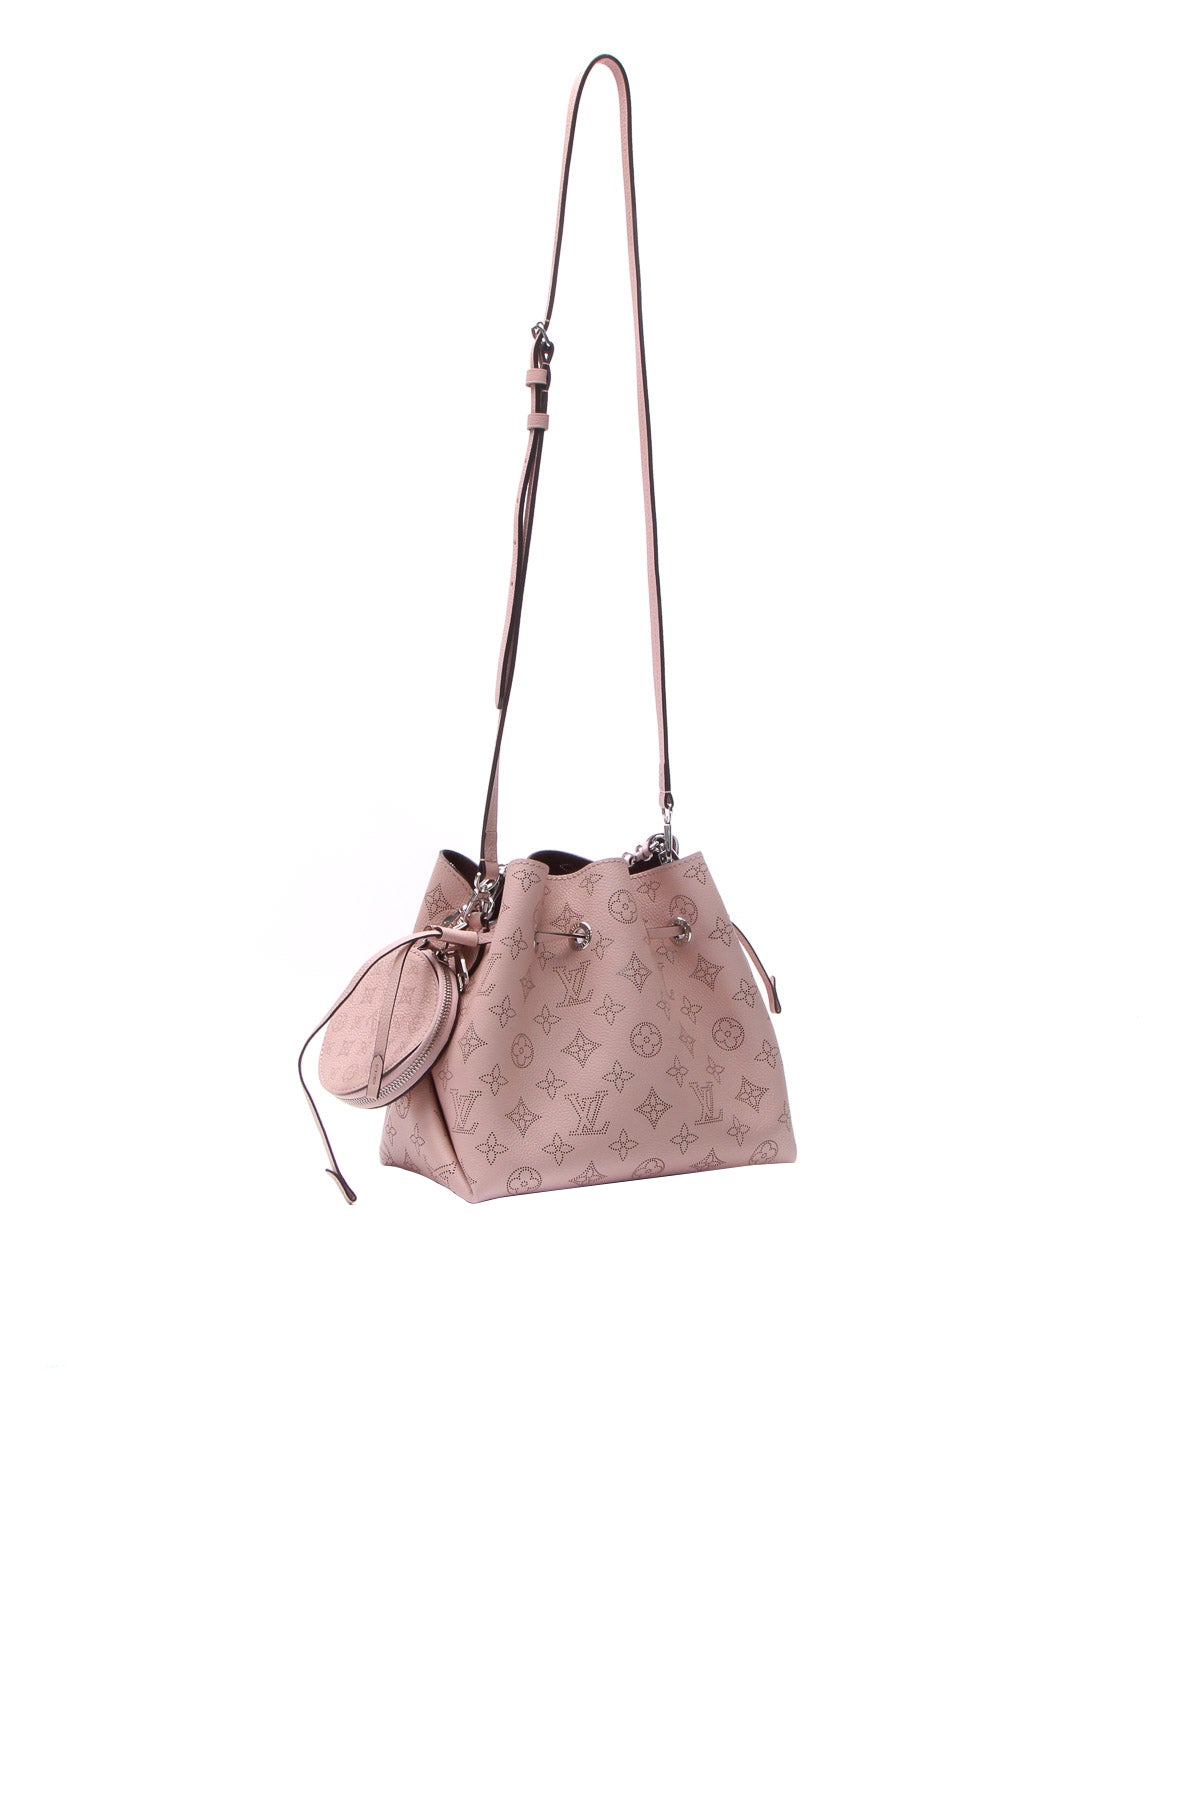 Louis Vuitton Bella Bucket Bag - Couture USA